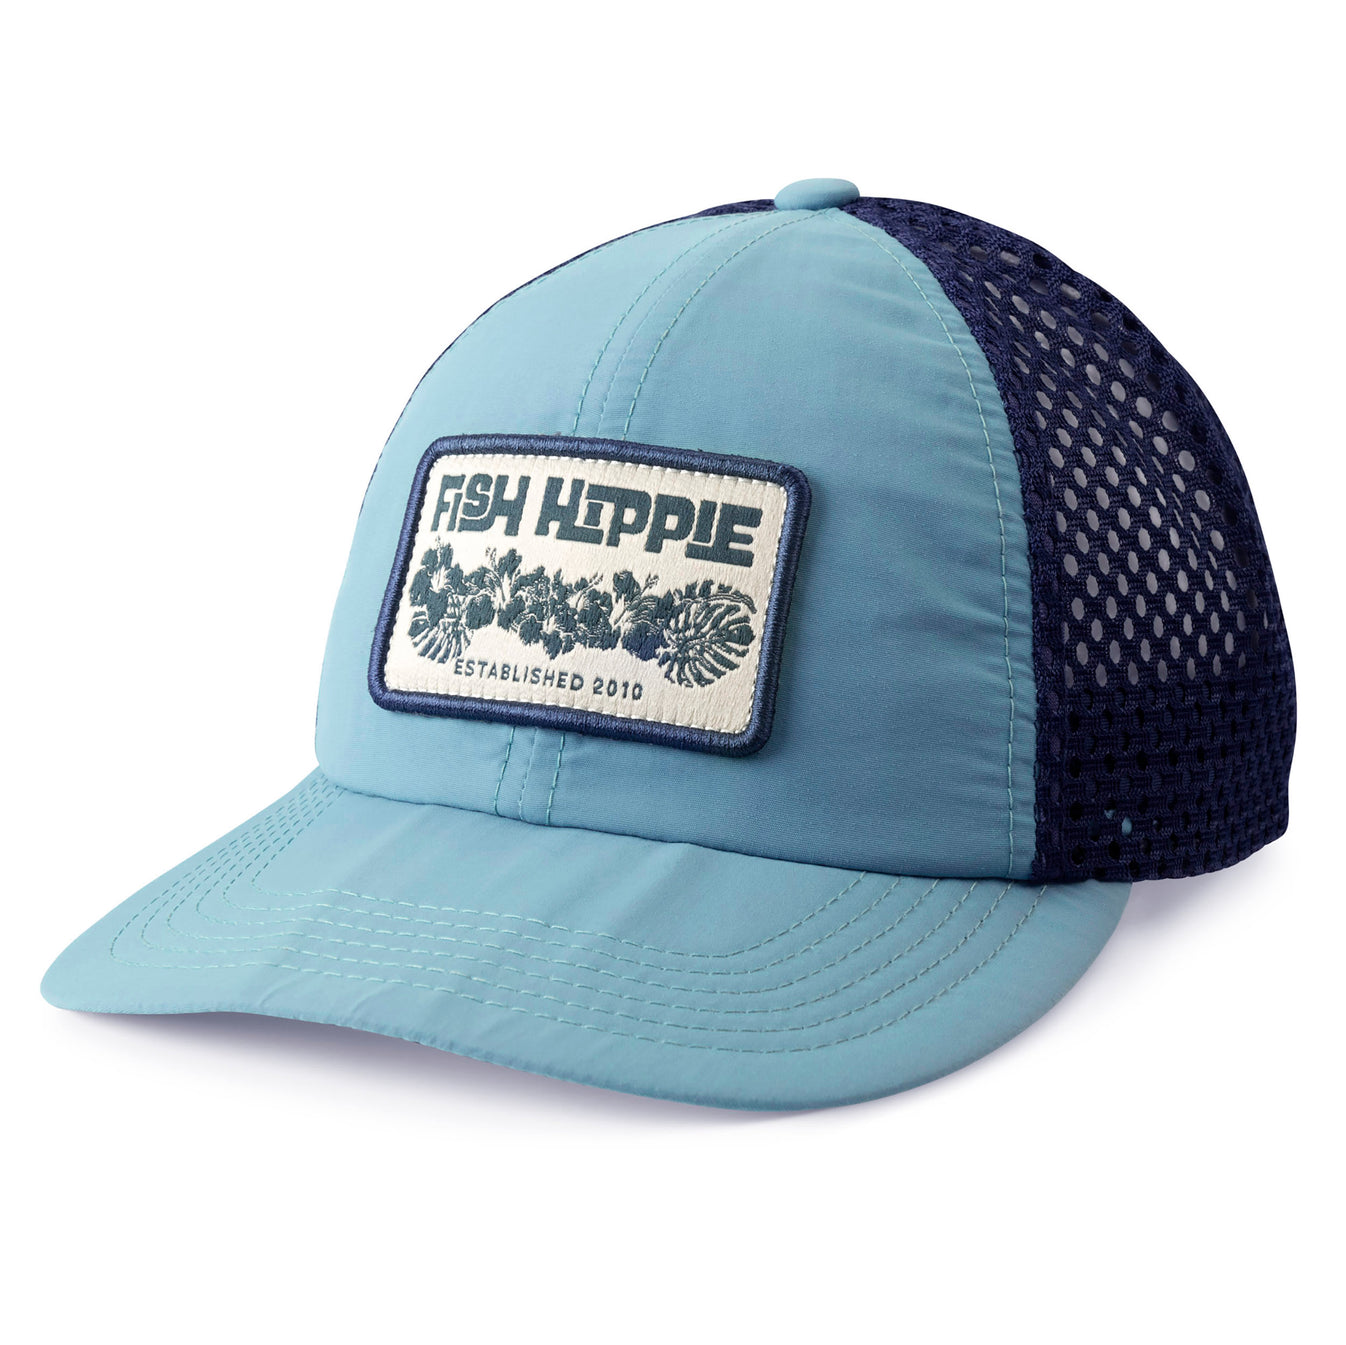 Fish Hippie Gone Astray Trucker Hat